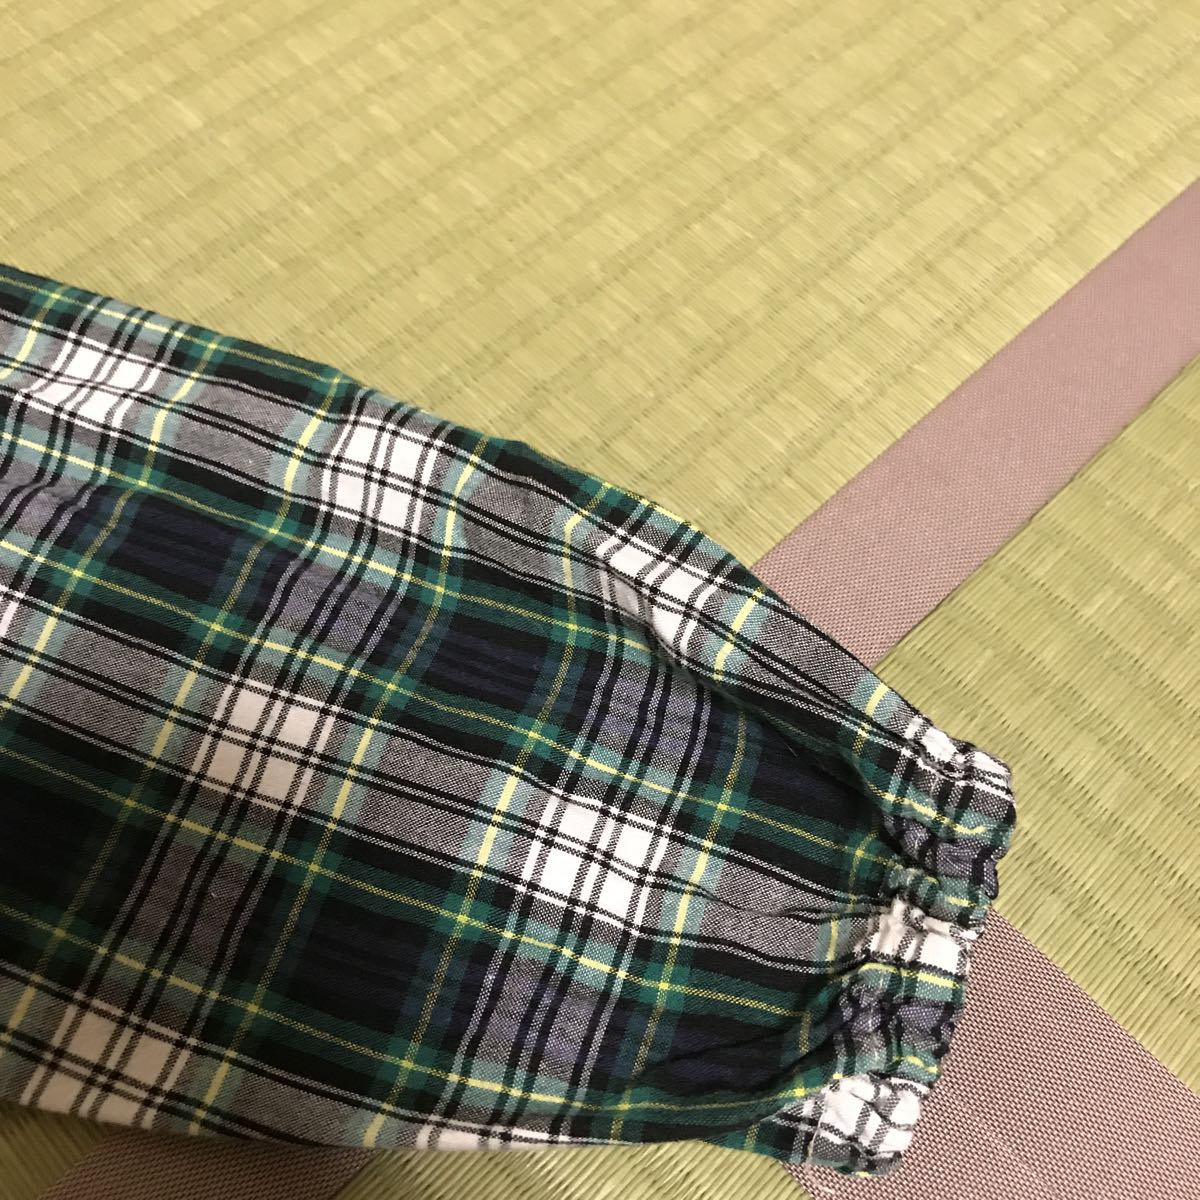  Kids рубашка * размер 120* в клетку * для мужчин и женщин * сделано в Японии 